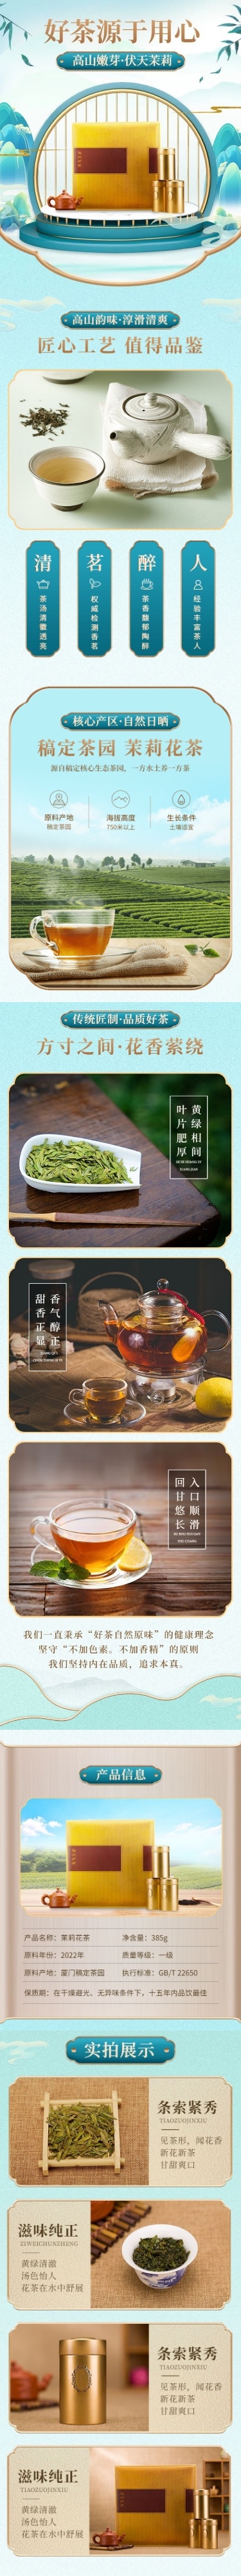 中国风茶叶商品详情页